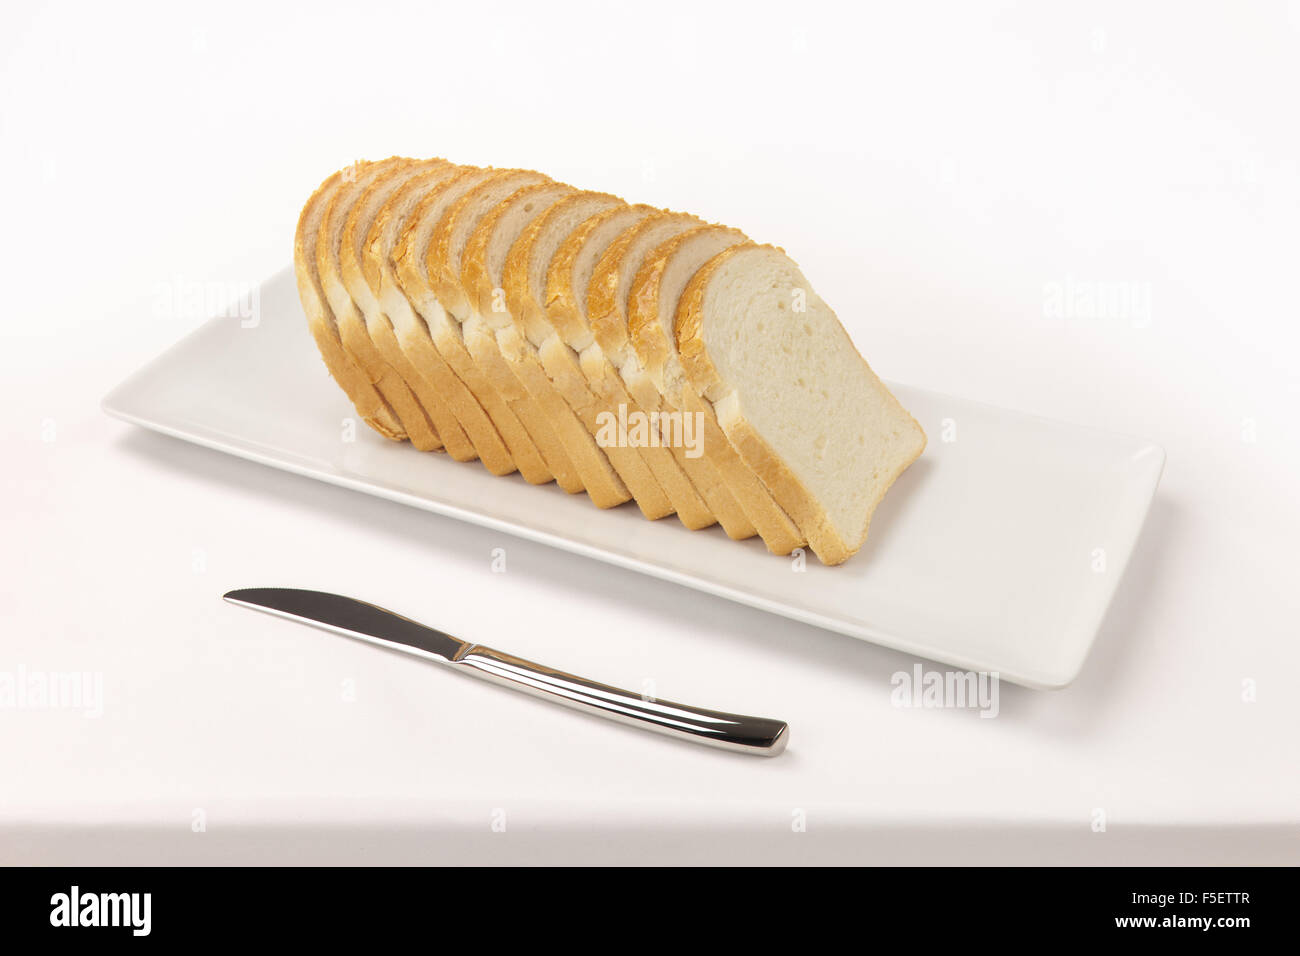 Geschnittenem Brot auf eine rechteckige Schale und ein Messer auf ein weißes Tischtuch. Stockfoto